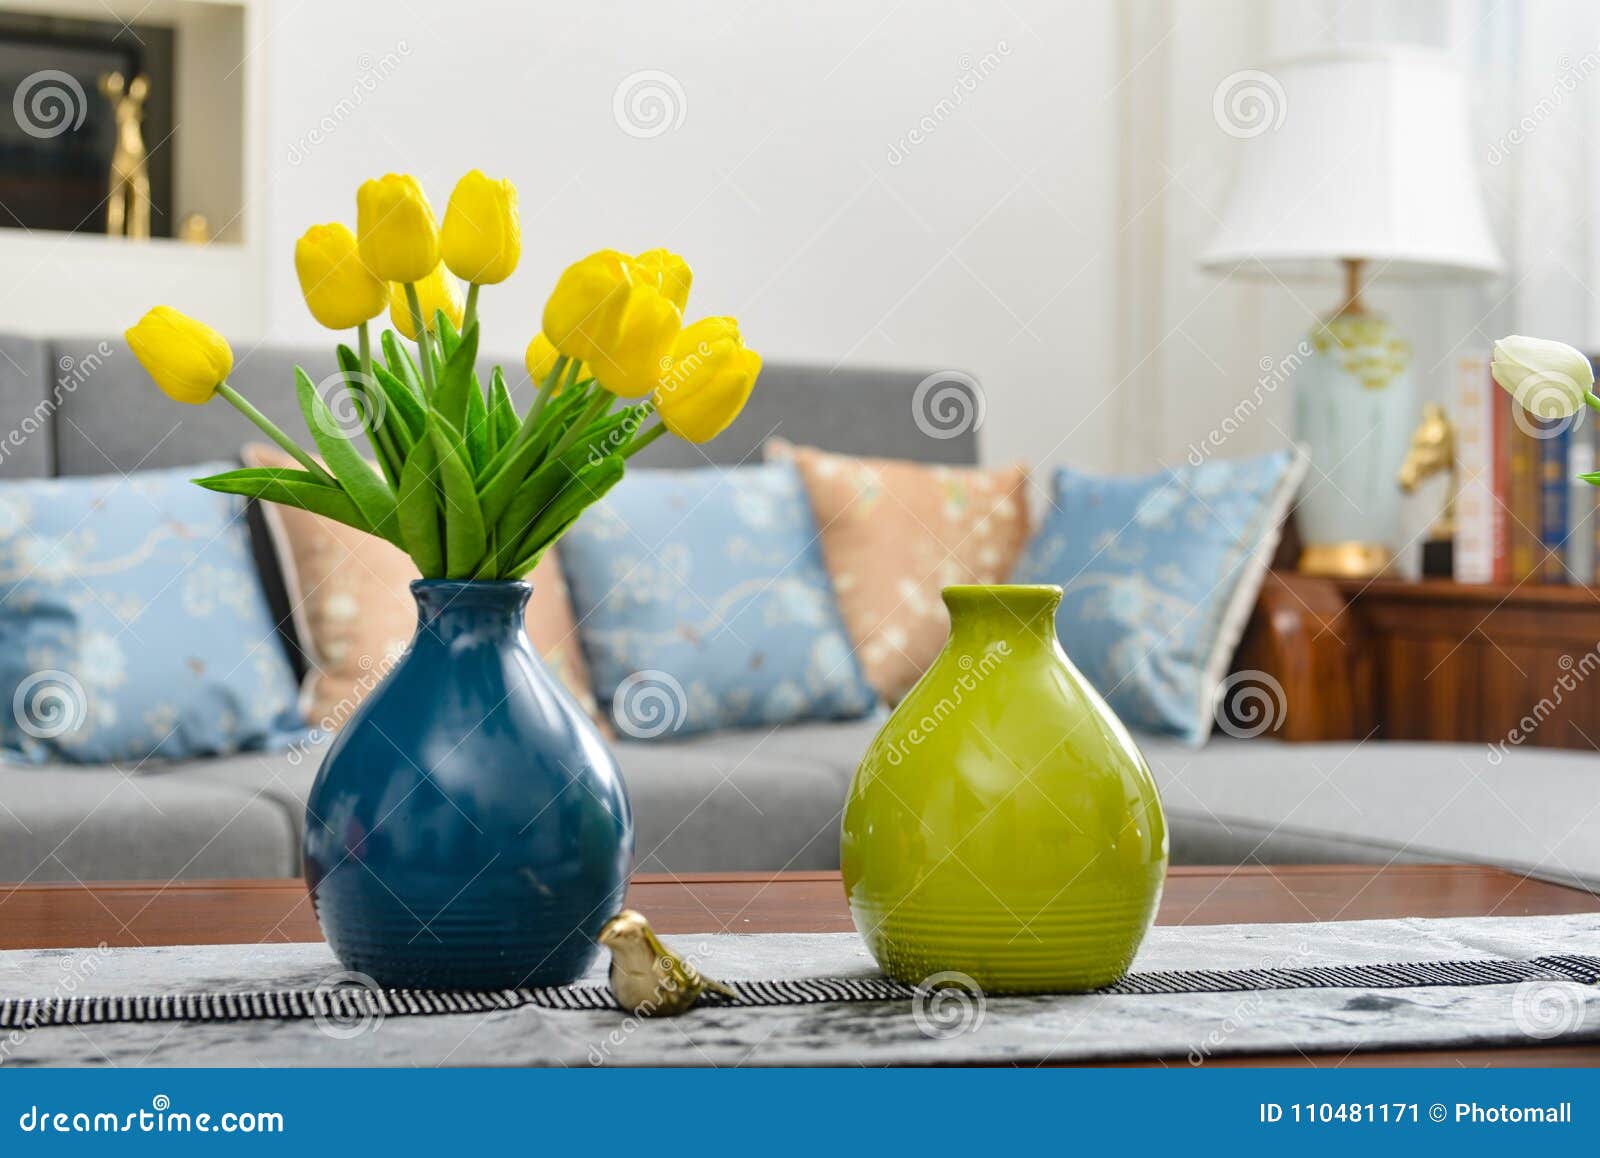 home interior decor, tulip bouquet in vase